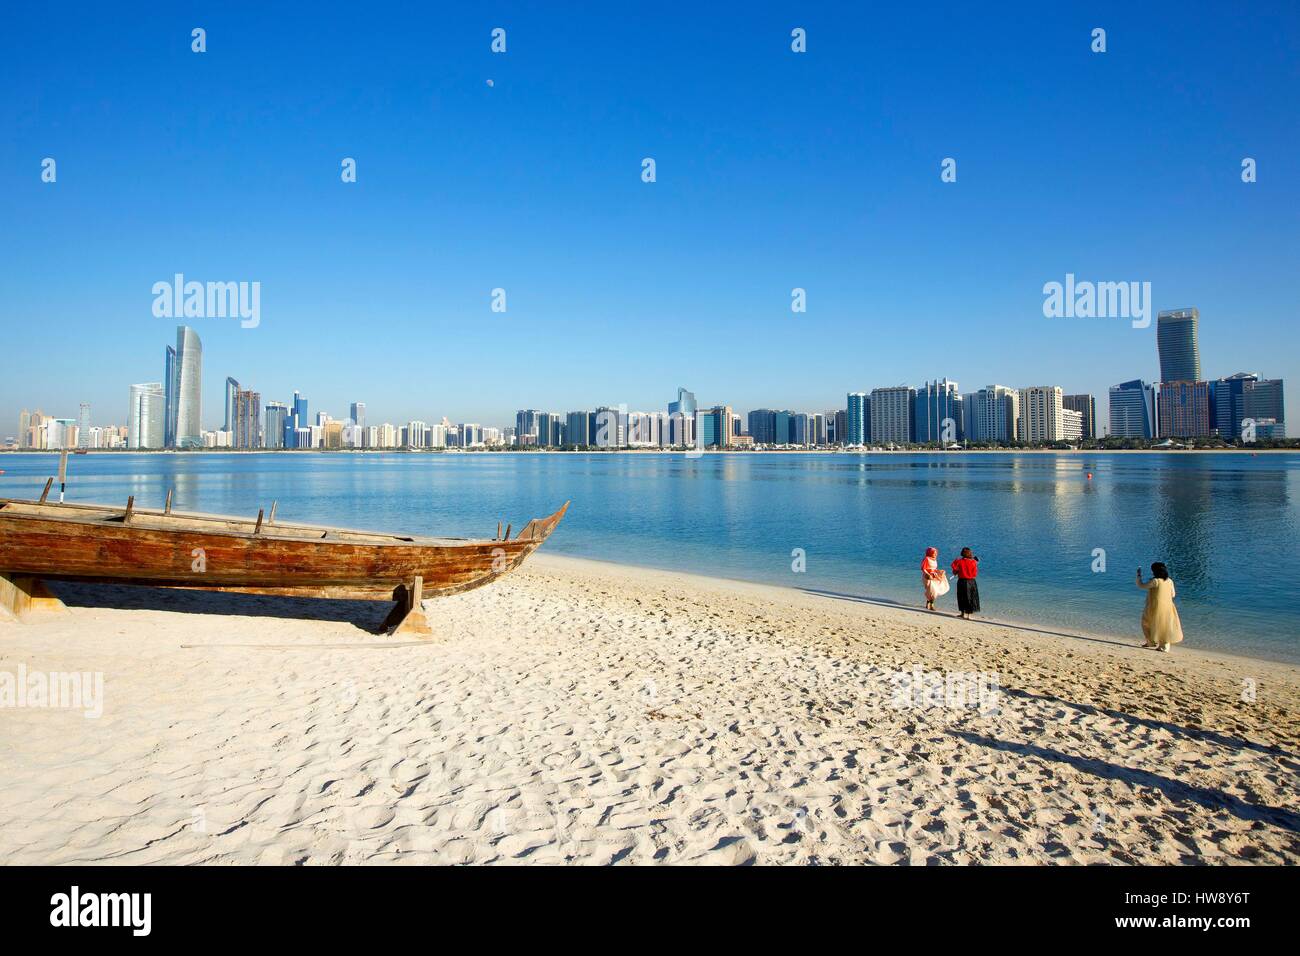 Corniche Beach Abu Dhabi Stock Photos Corniche Beach Abu Dhabi